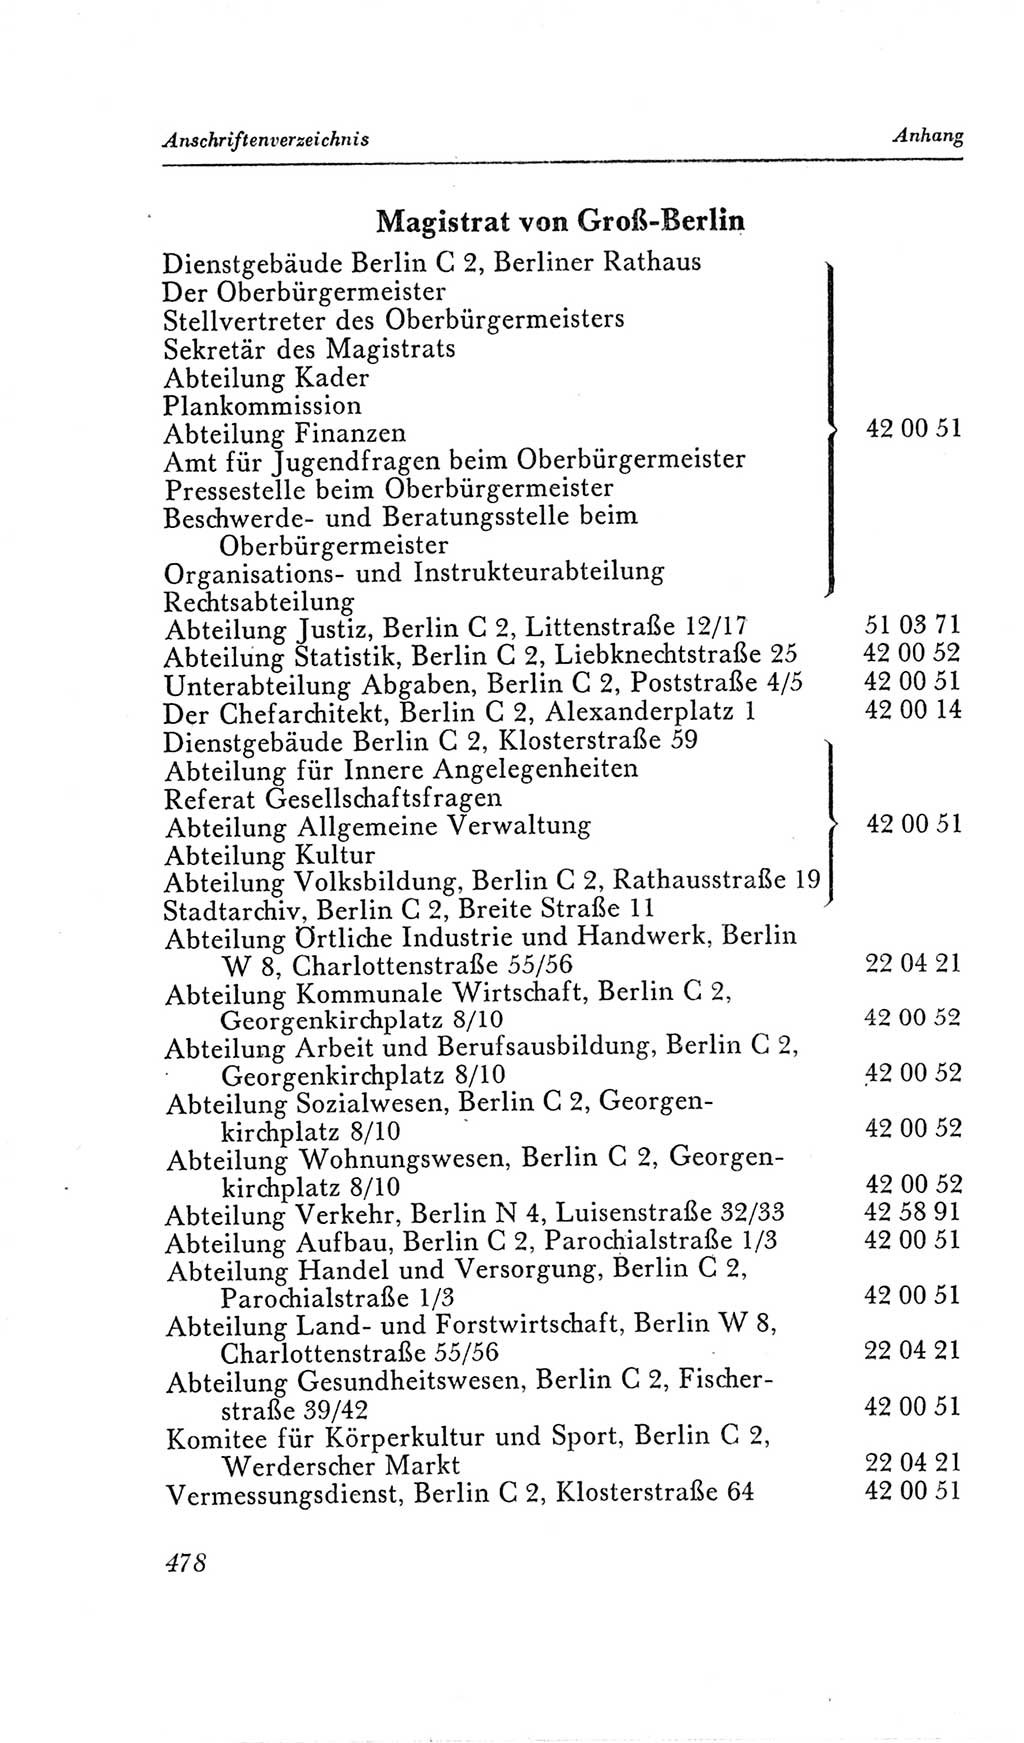 Handbuch der Volkskammer (VK) der Deutschen Demokratischen Republik (DDR), 2. Wahlperiode 1954-1958, Seite 478 (Hdb. VK. DDR, 2. WP. 1954-1958, S. 478)